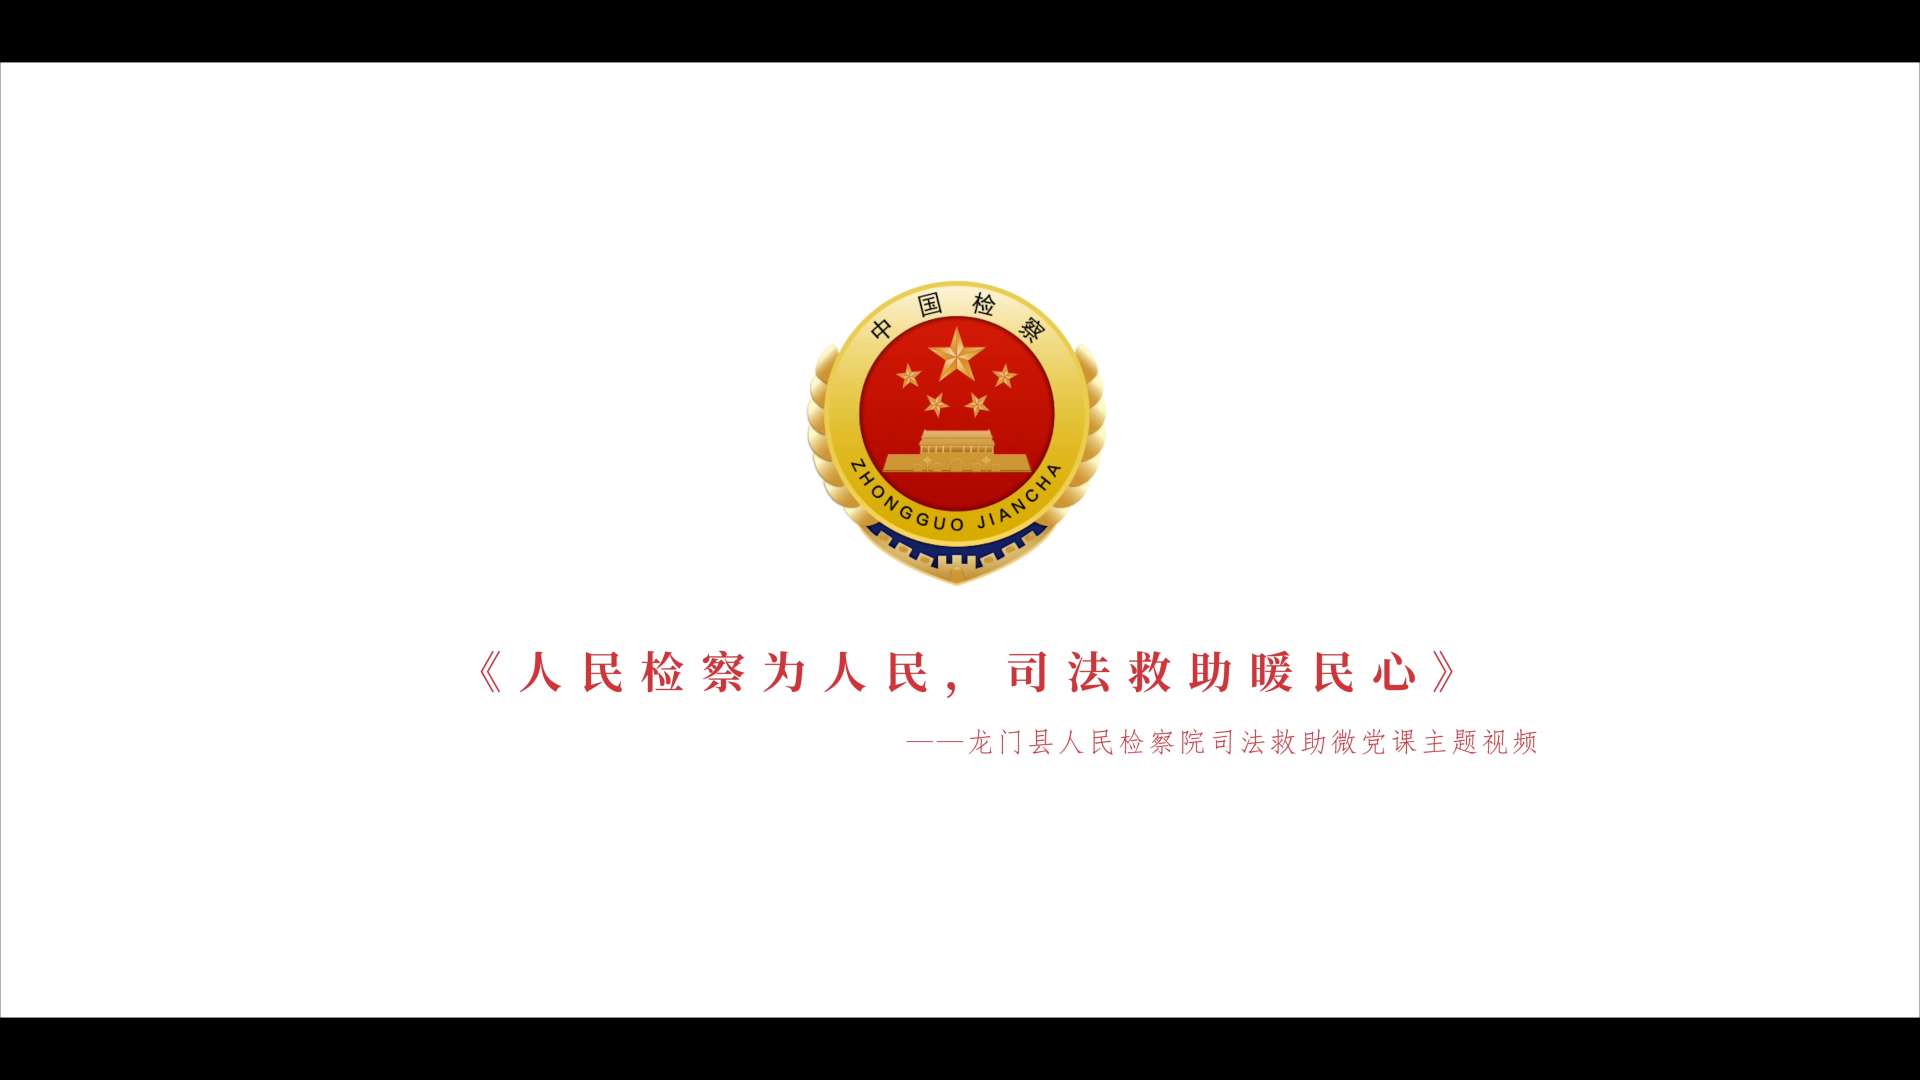 【龙门县人民检察院】司法救助主题影片